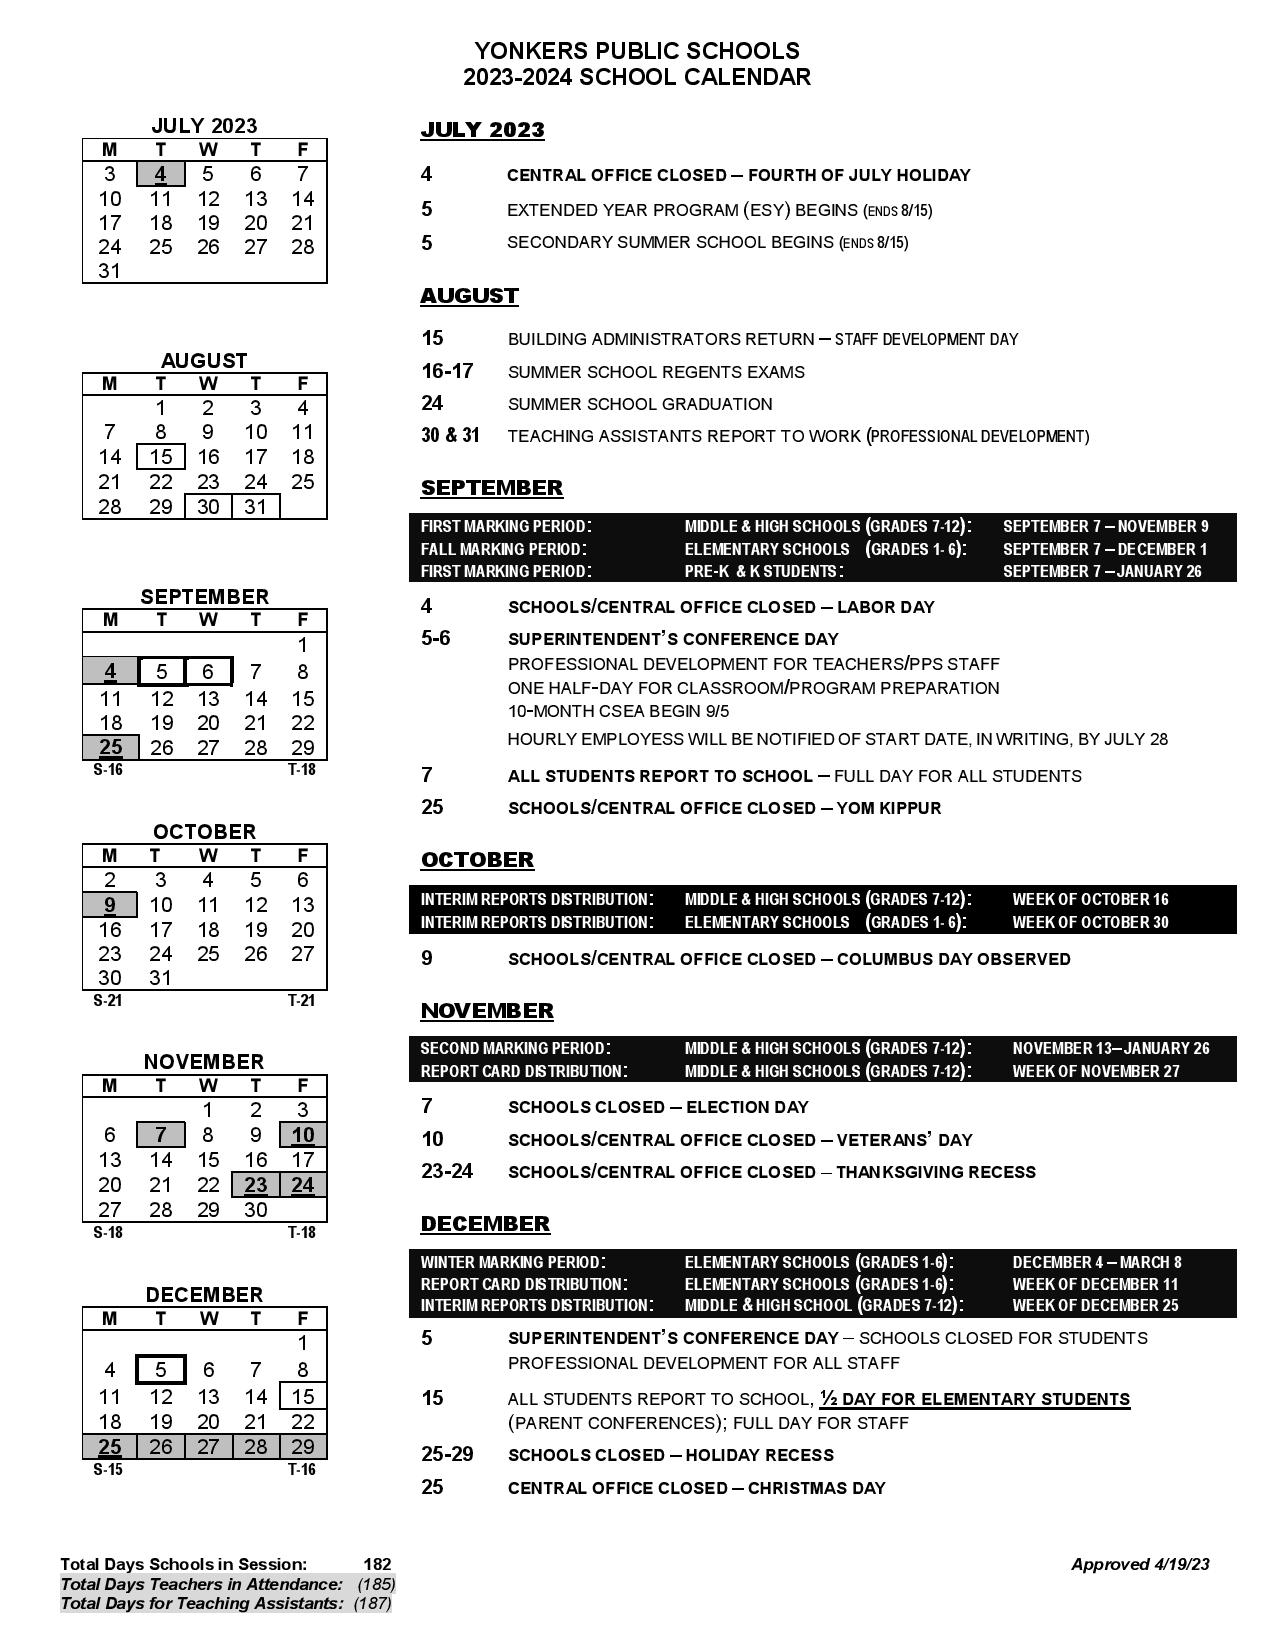 Yonkers Public Schools Calendar 2024 in PDF